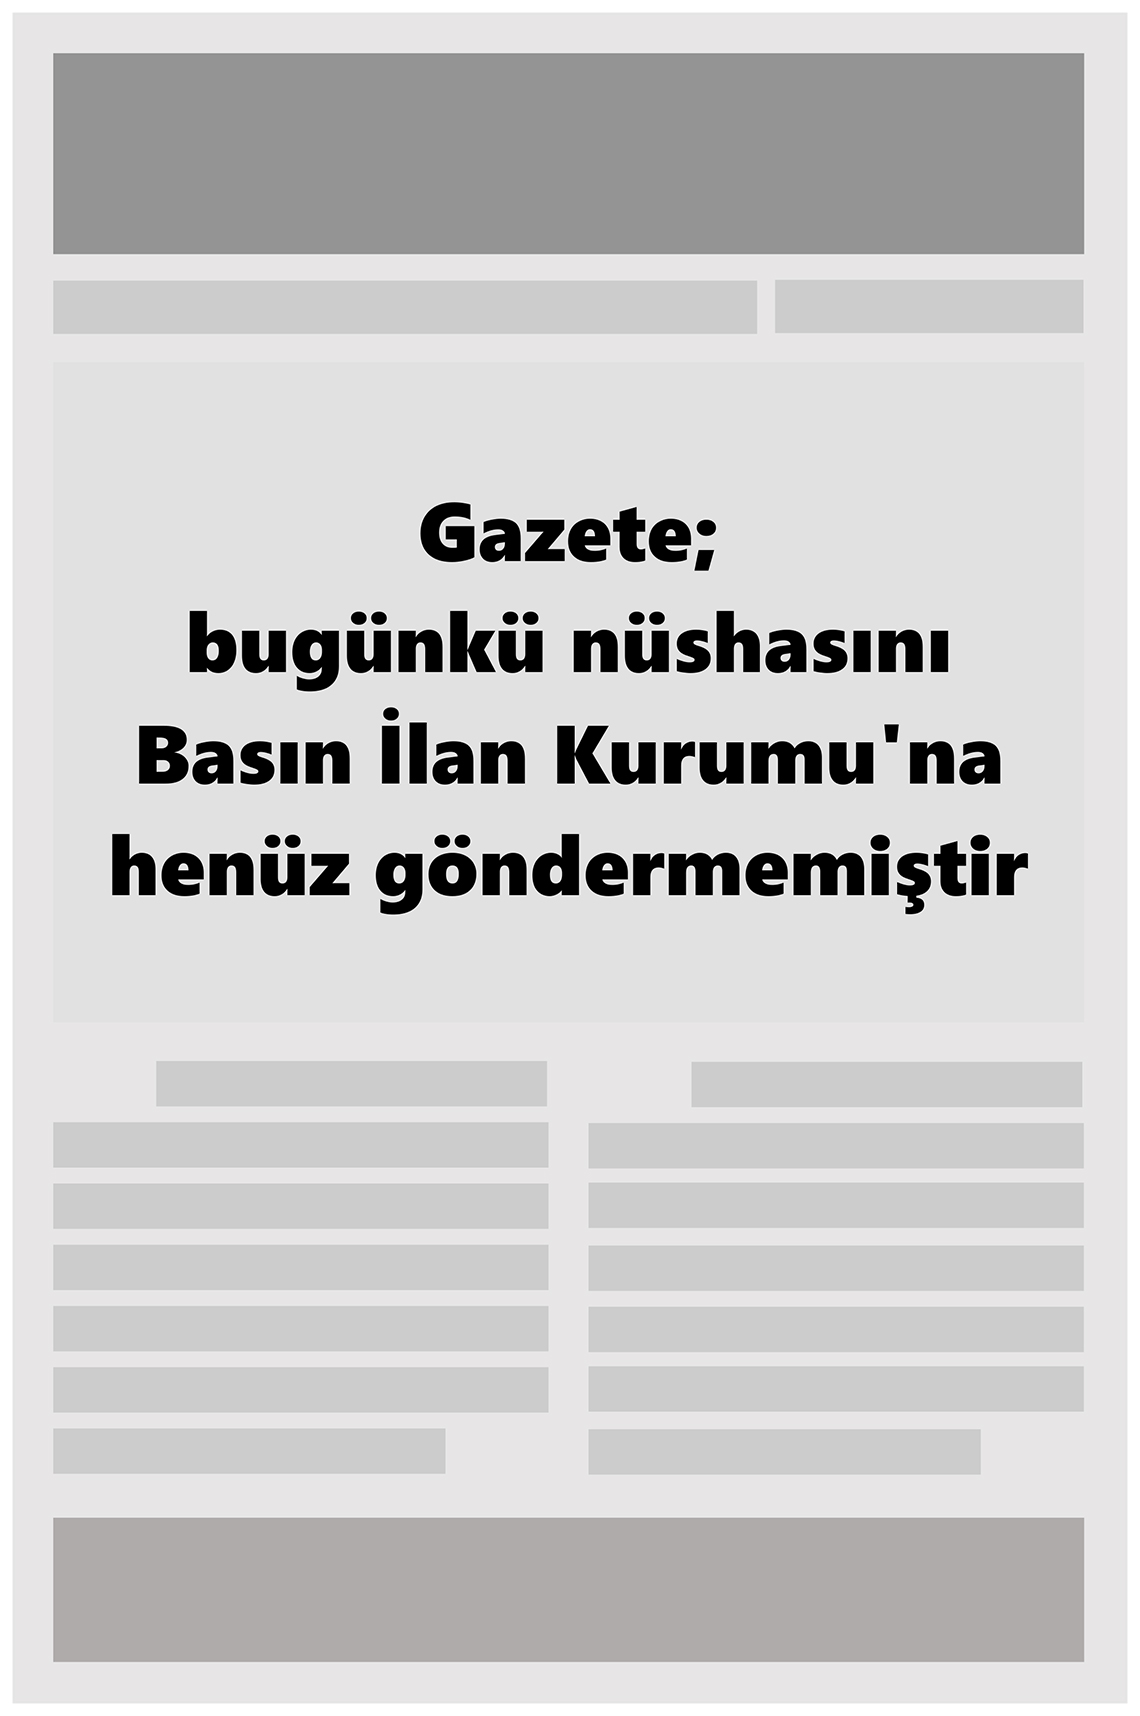 26 Haziran 2022 Yenişehir Yörem Gazete Manşeti